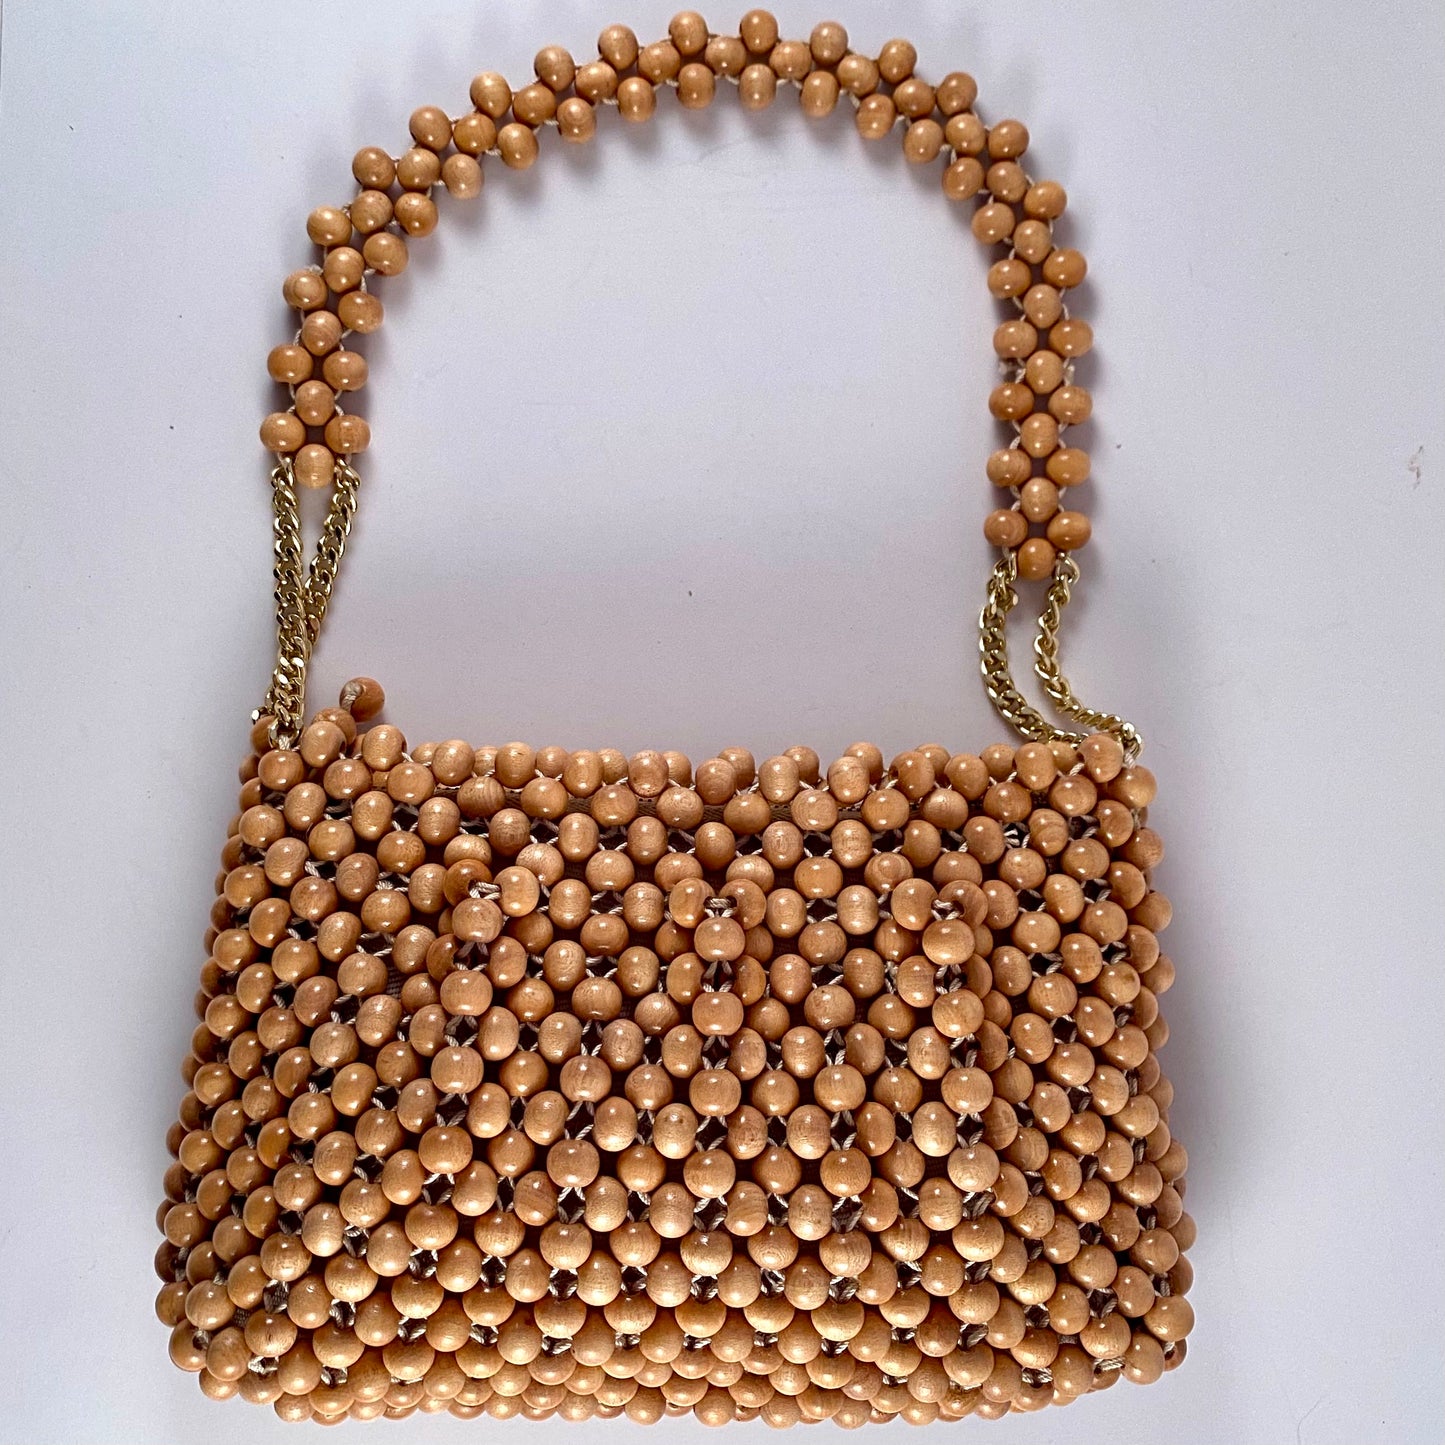 Vintage Style Beaded Handbag